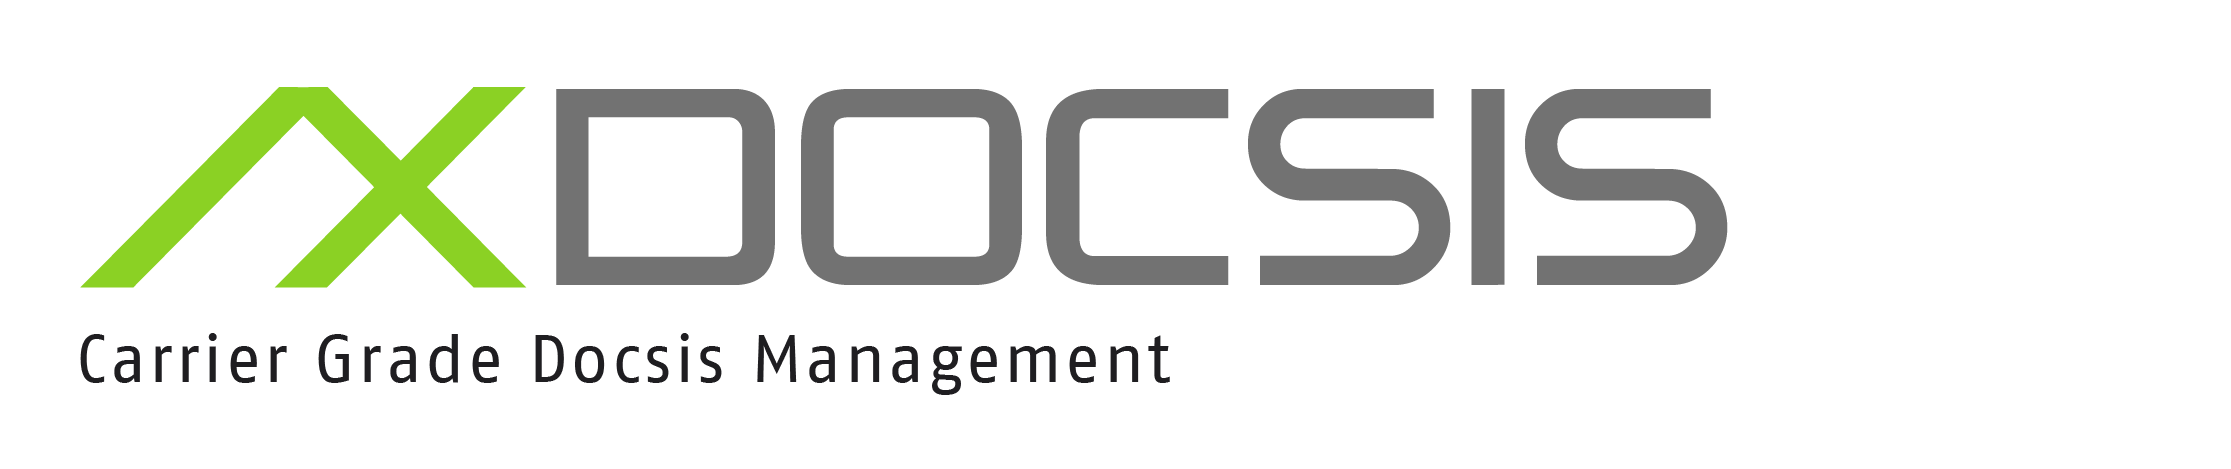 Axiros Logotipo do produto AX DOCSIS